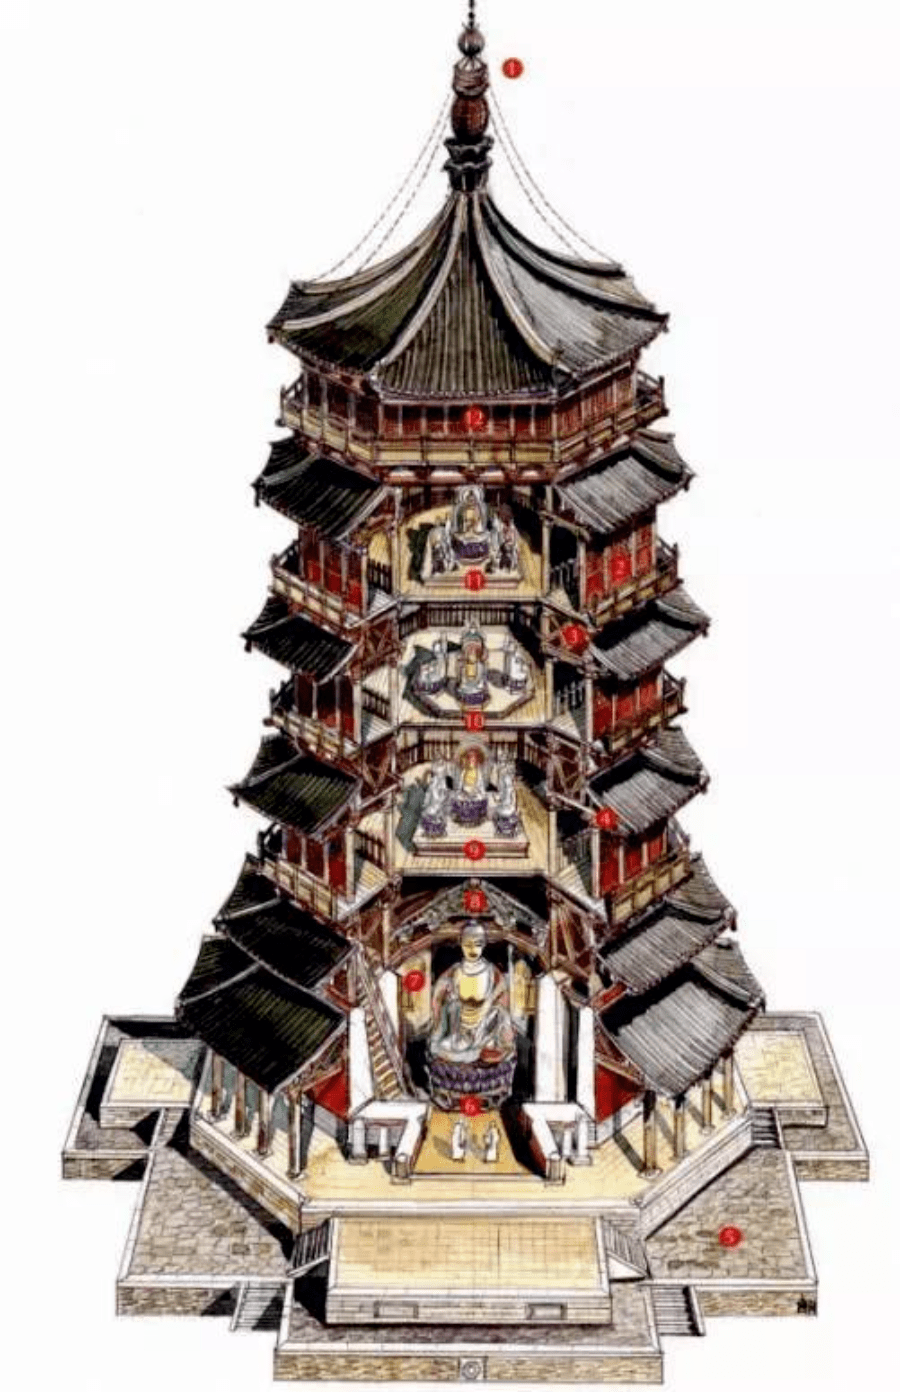 手绘中国经典古建筑丨欣赏